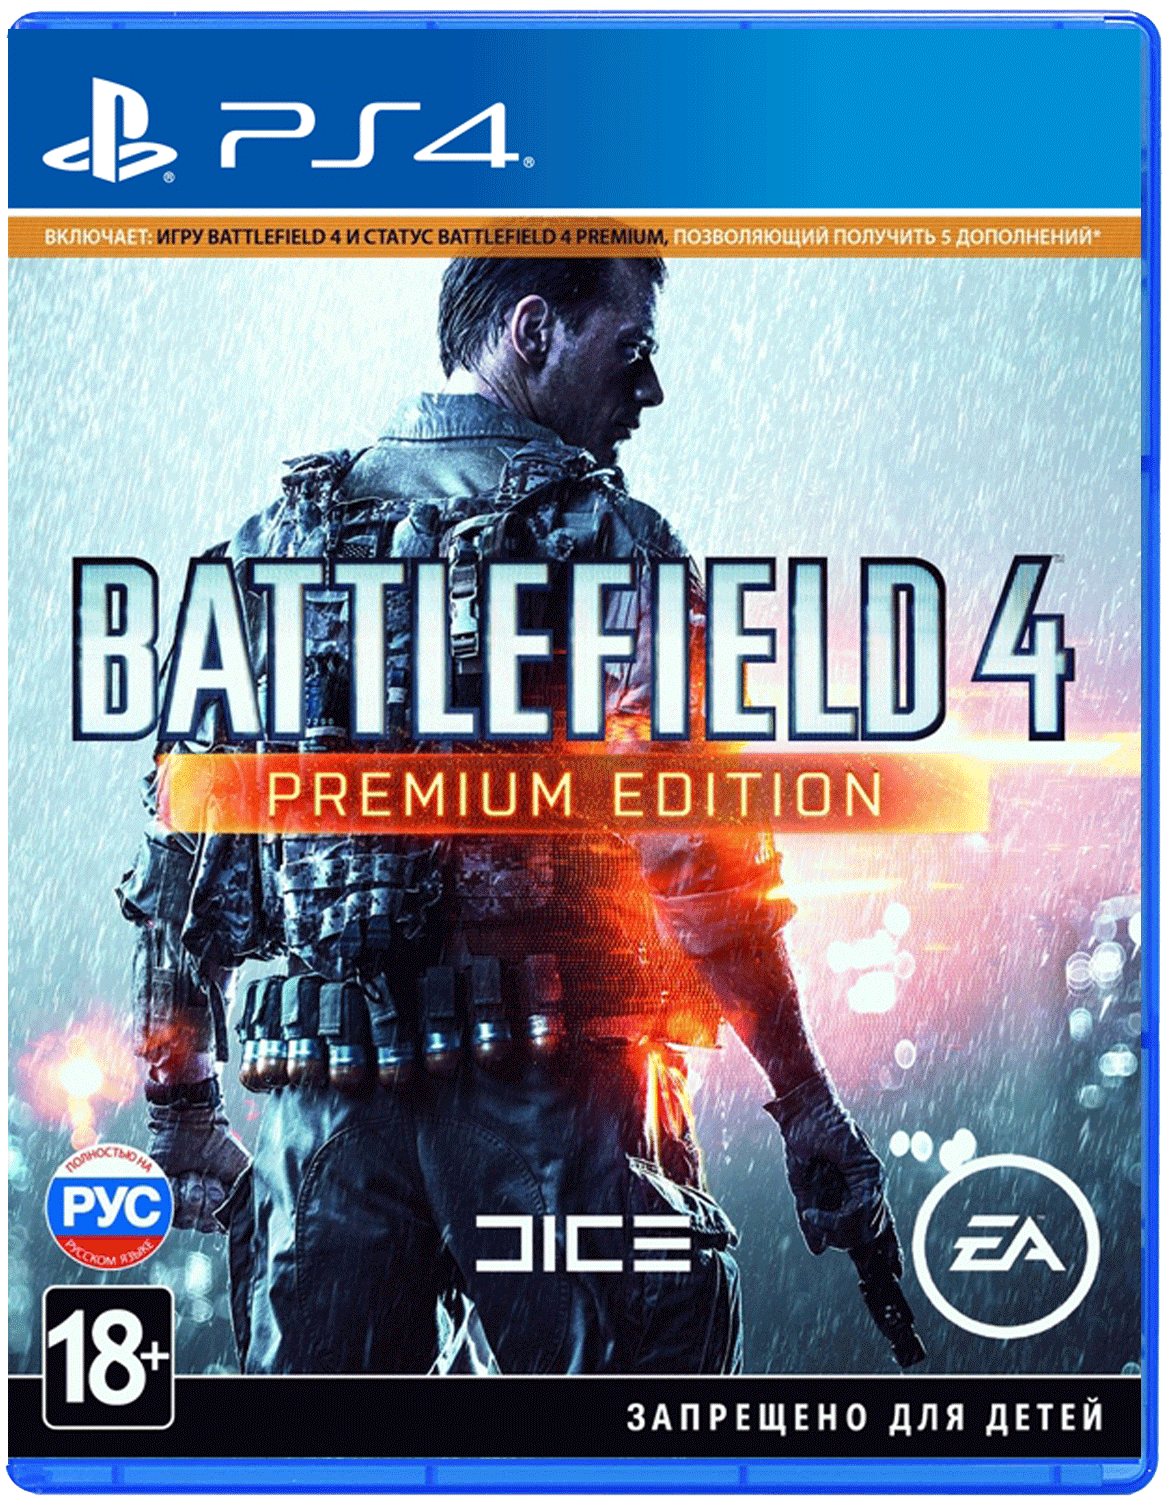 Том игр на пс 4. Battlefield 4 Premium Edition ps4. Battlefield 4 ps4 диск. Диск для ps4 Battlefield 4 Premium Edition. Battlefield ps4 игры на ps4.